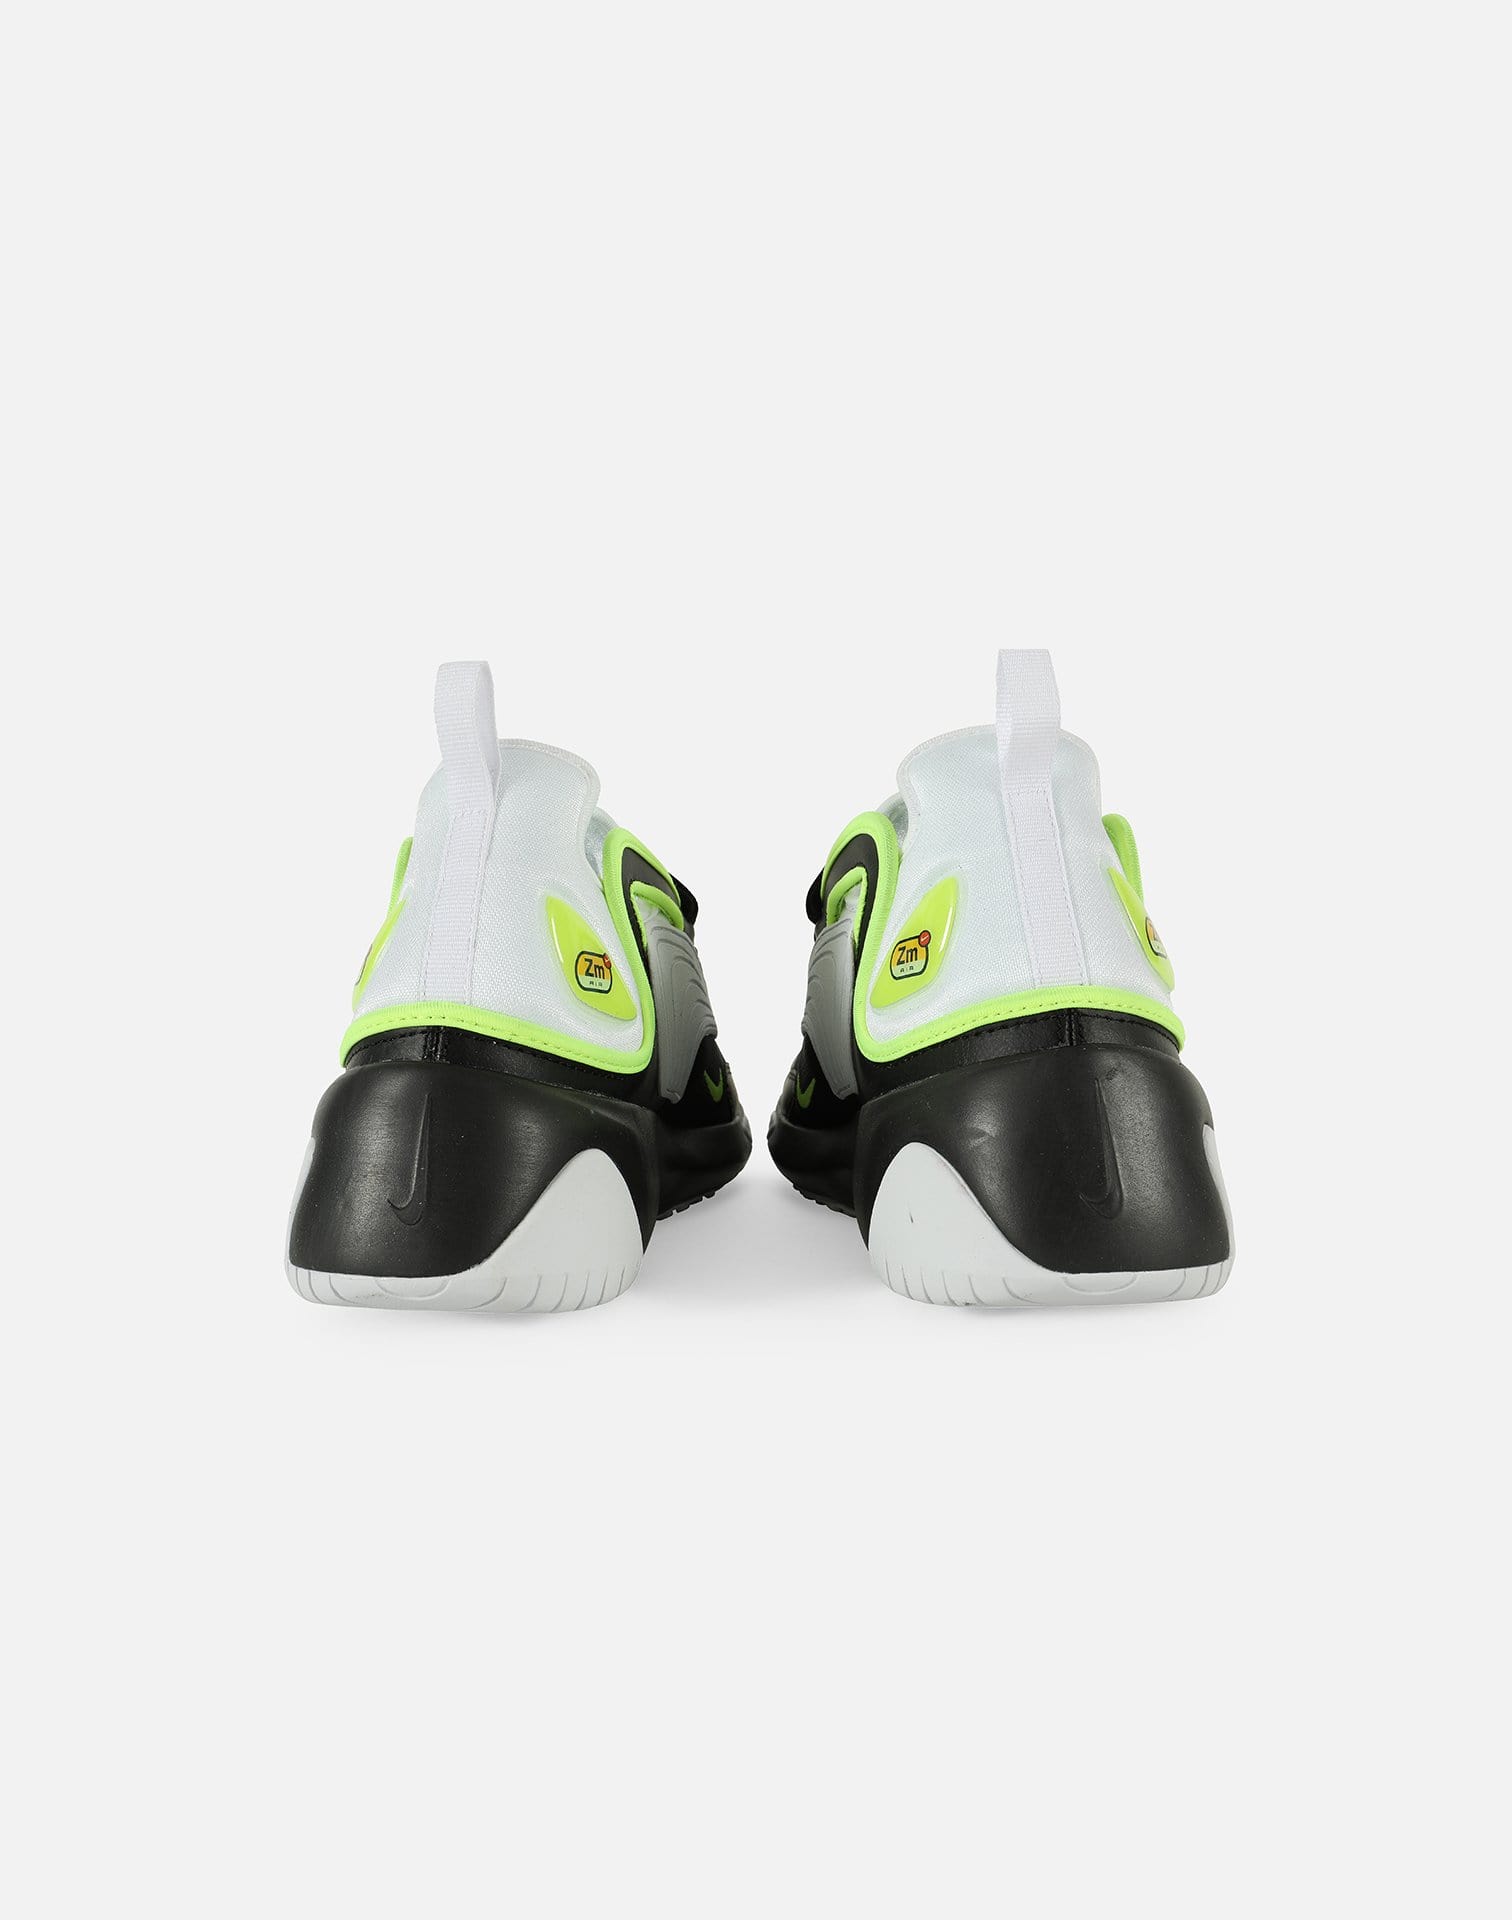 Nike ZOOM 2K